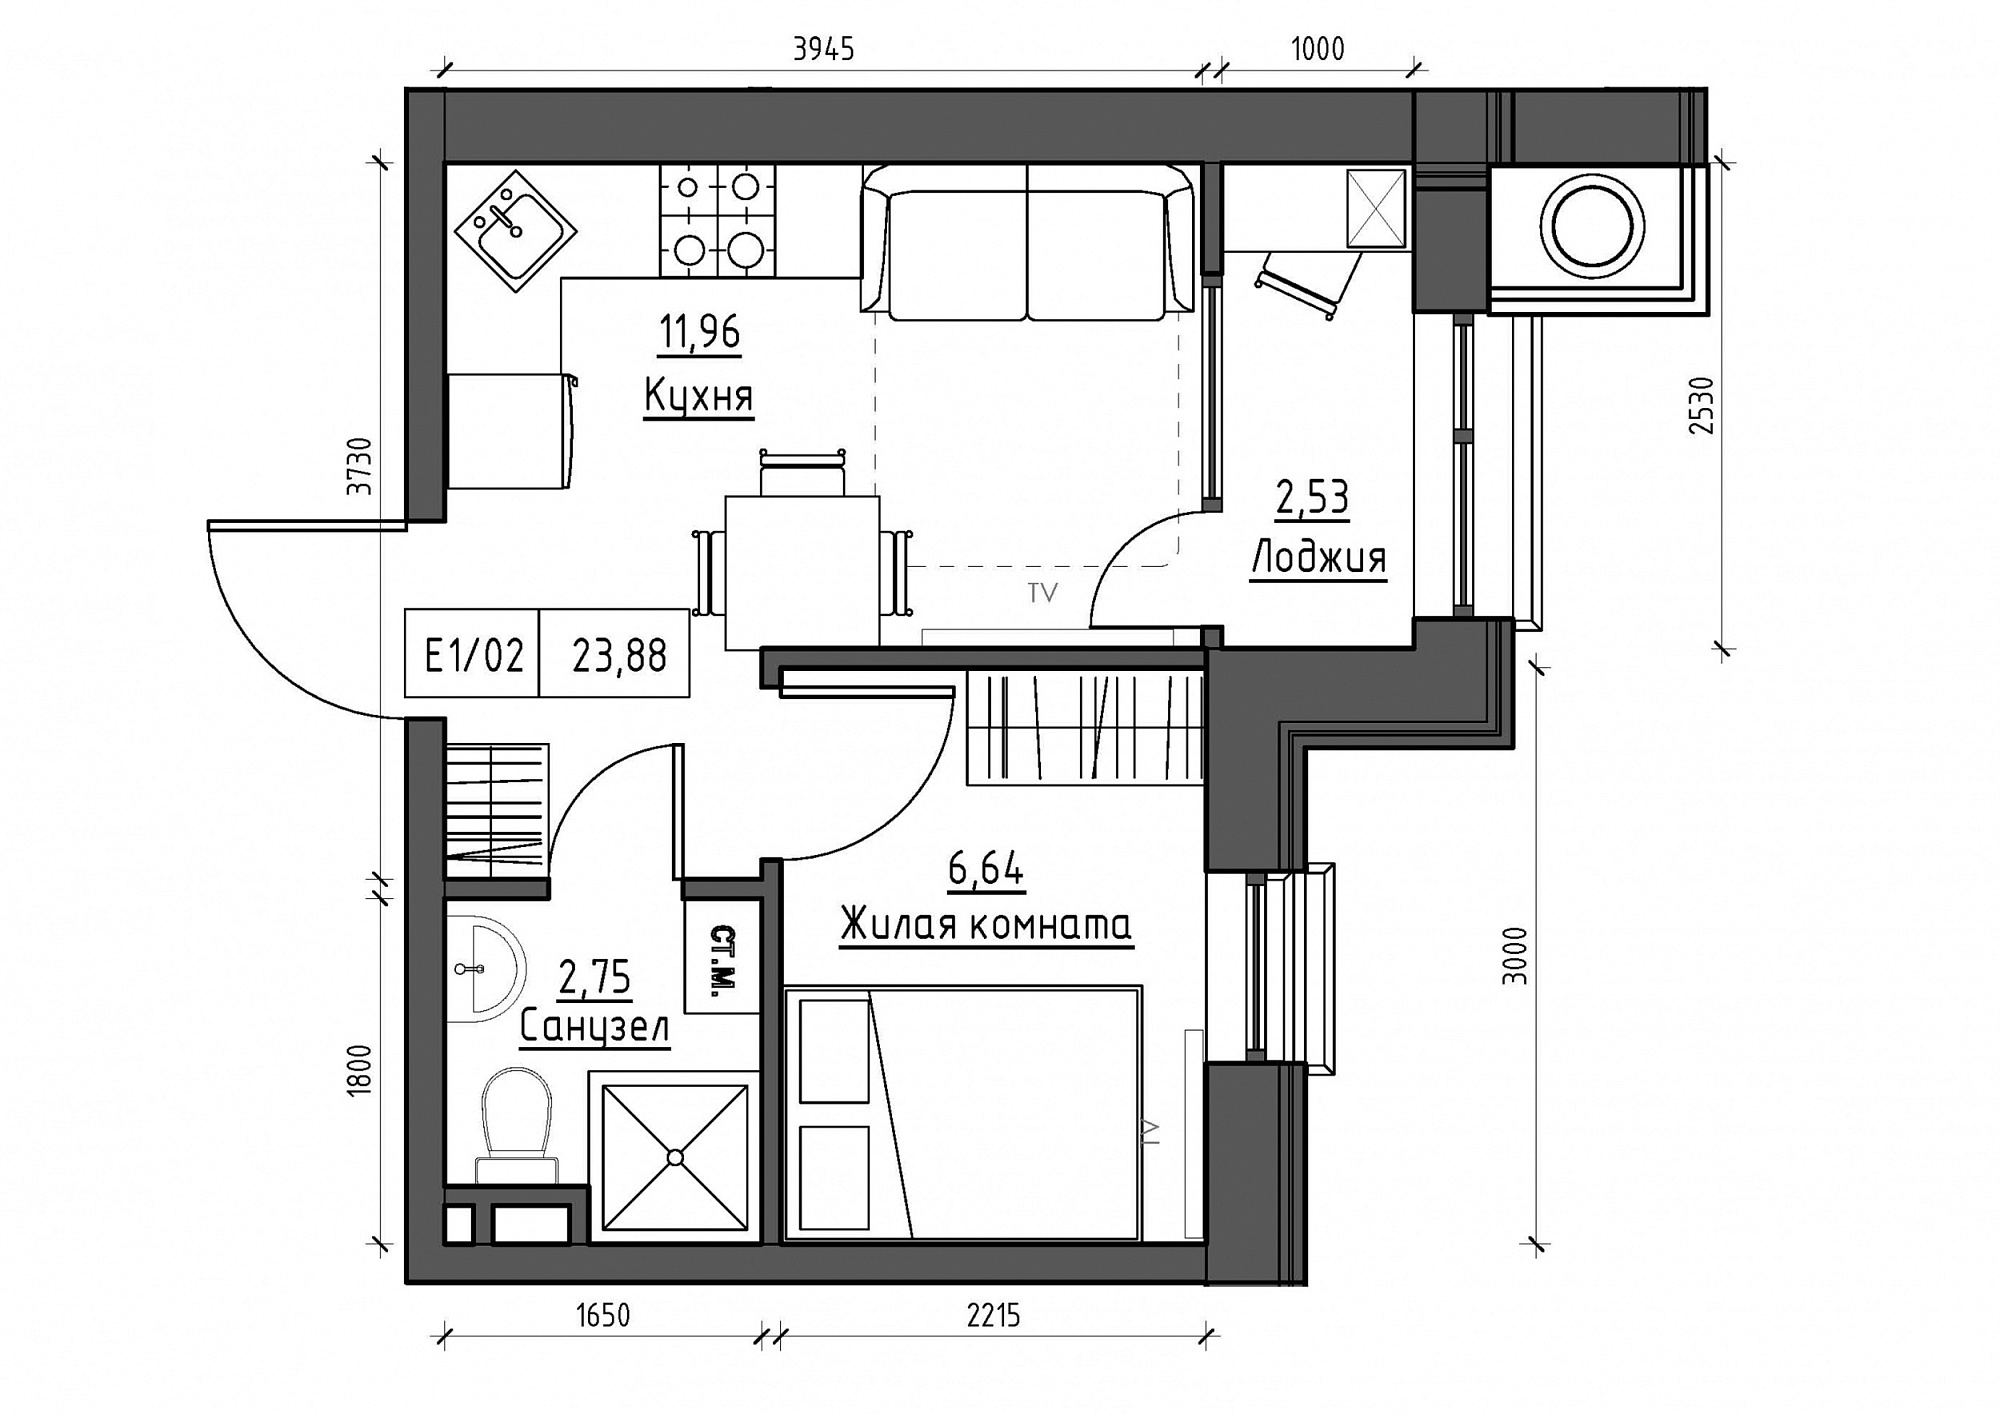 Планування 1-к квартира площею 23.88м2, KS-012-02/0015.